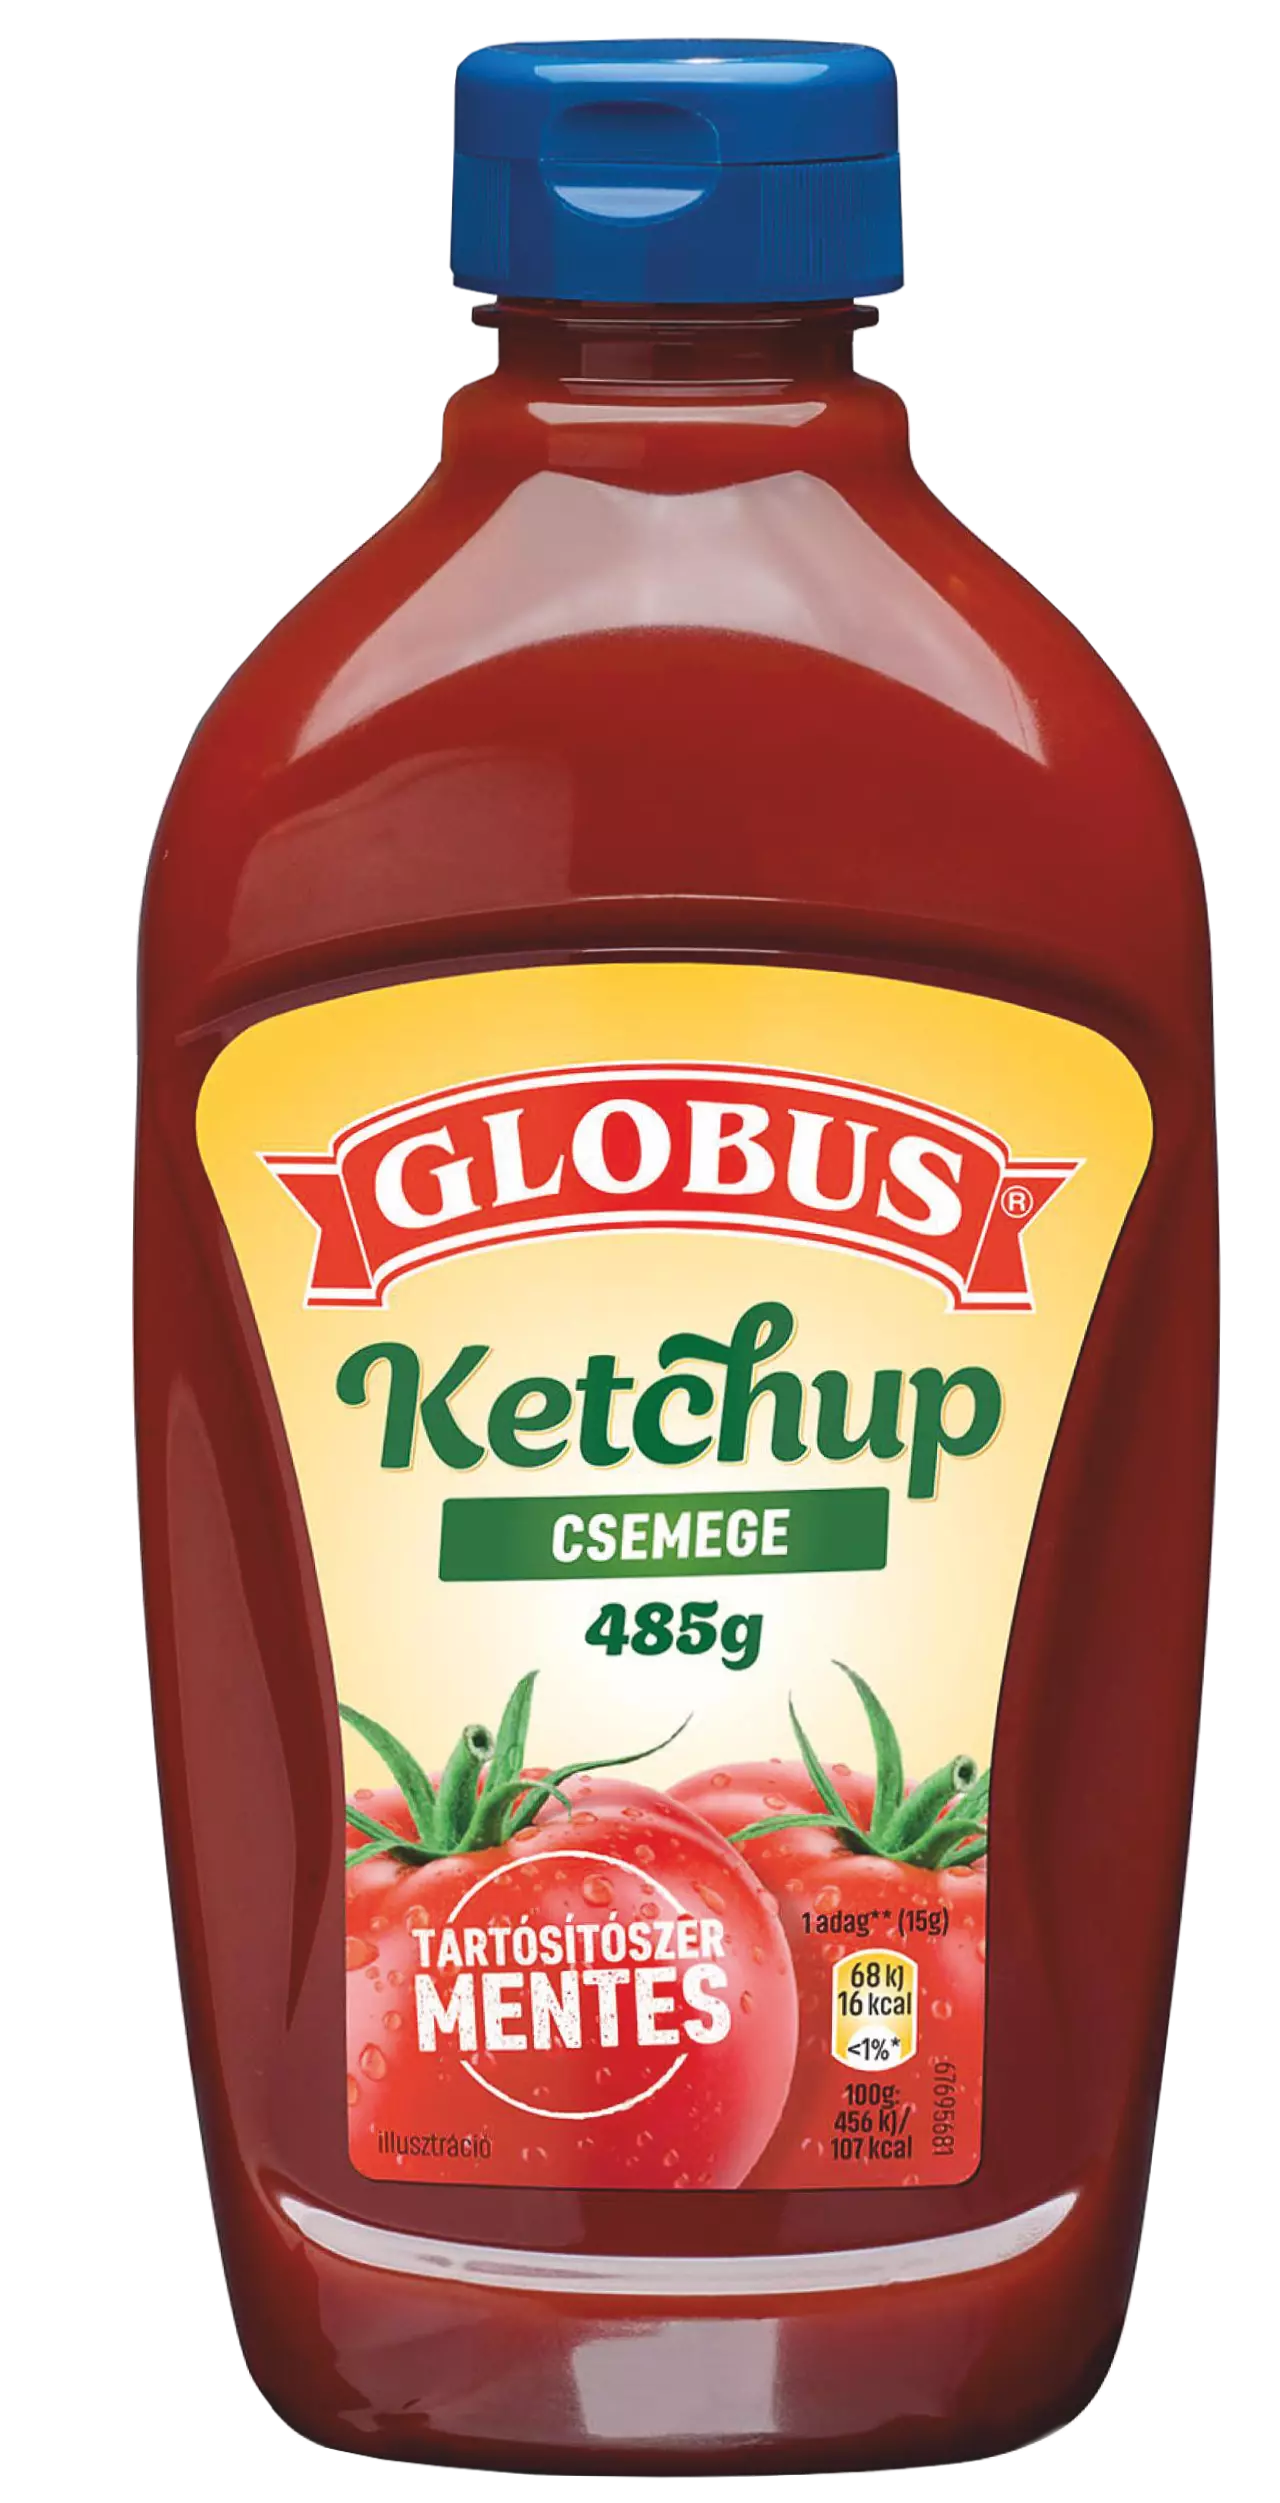 .Globus Ketchup 485g csemege